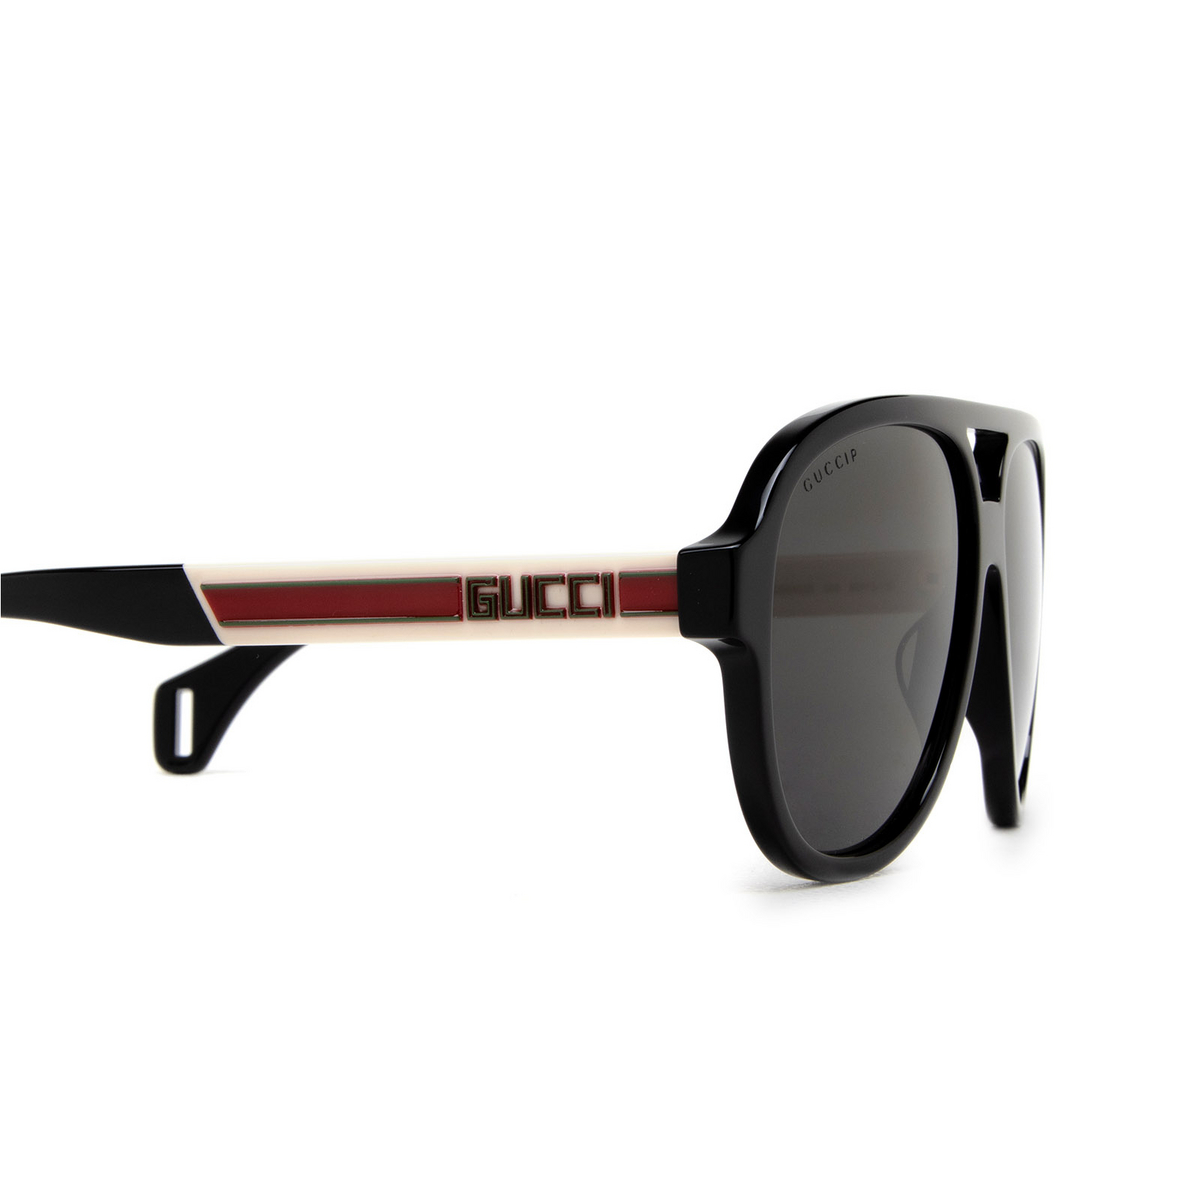 Gucci Gg0463s Sunglasses Mia Burton